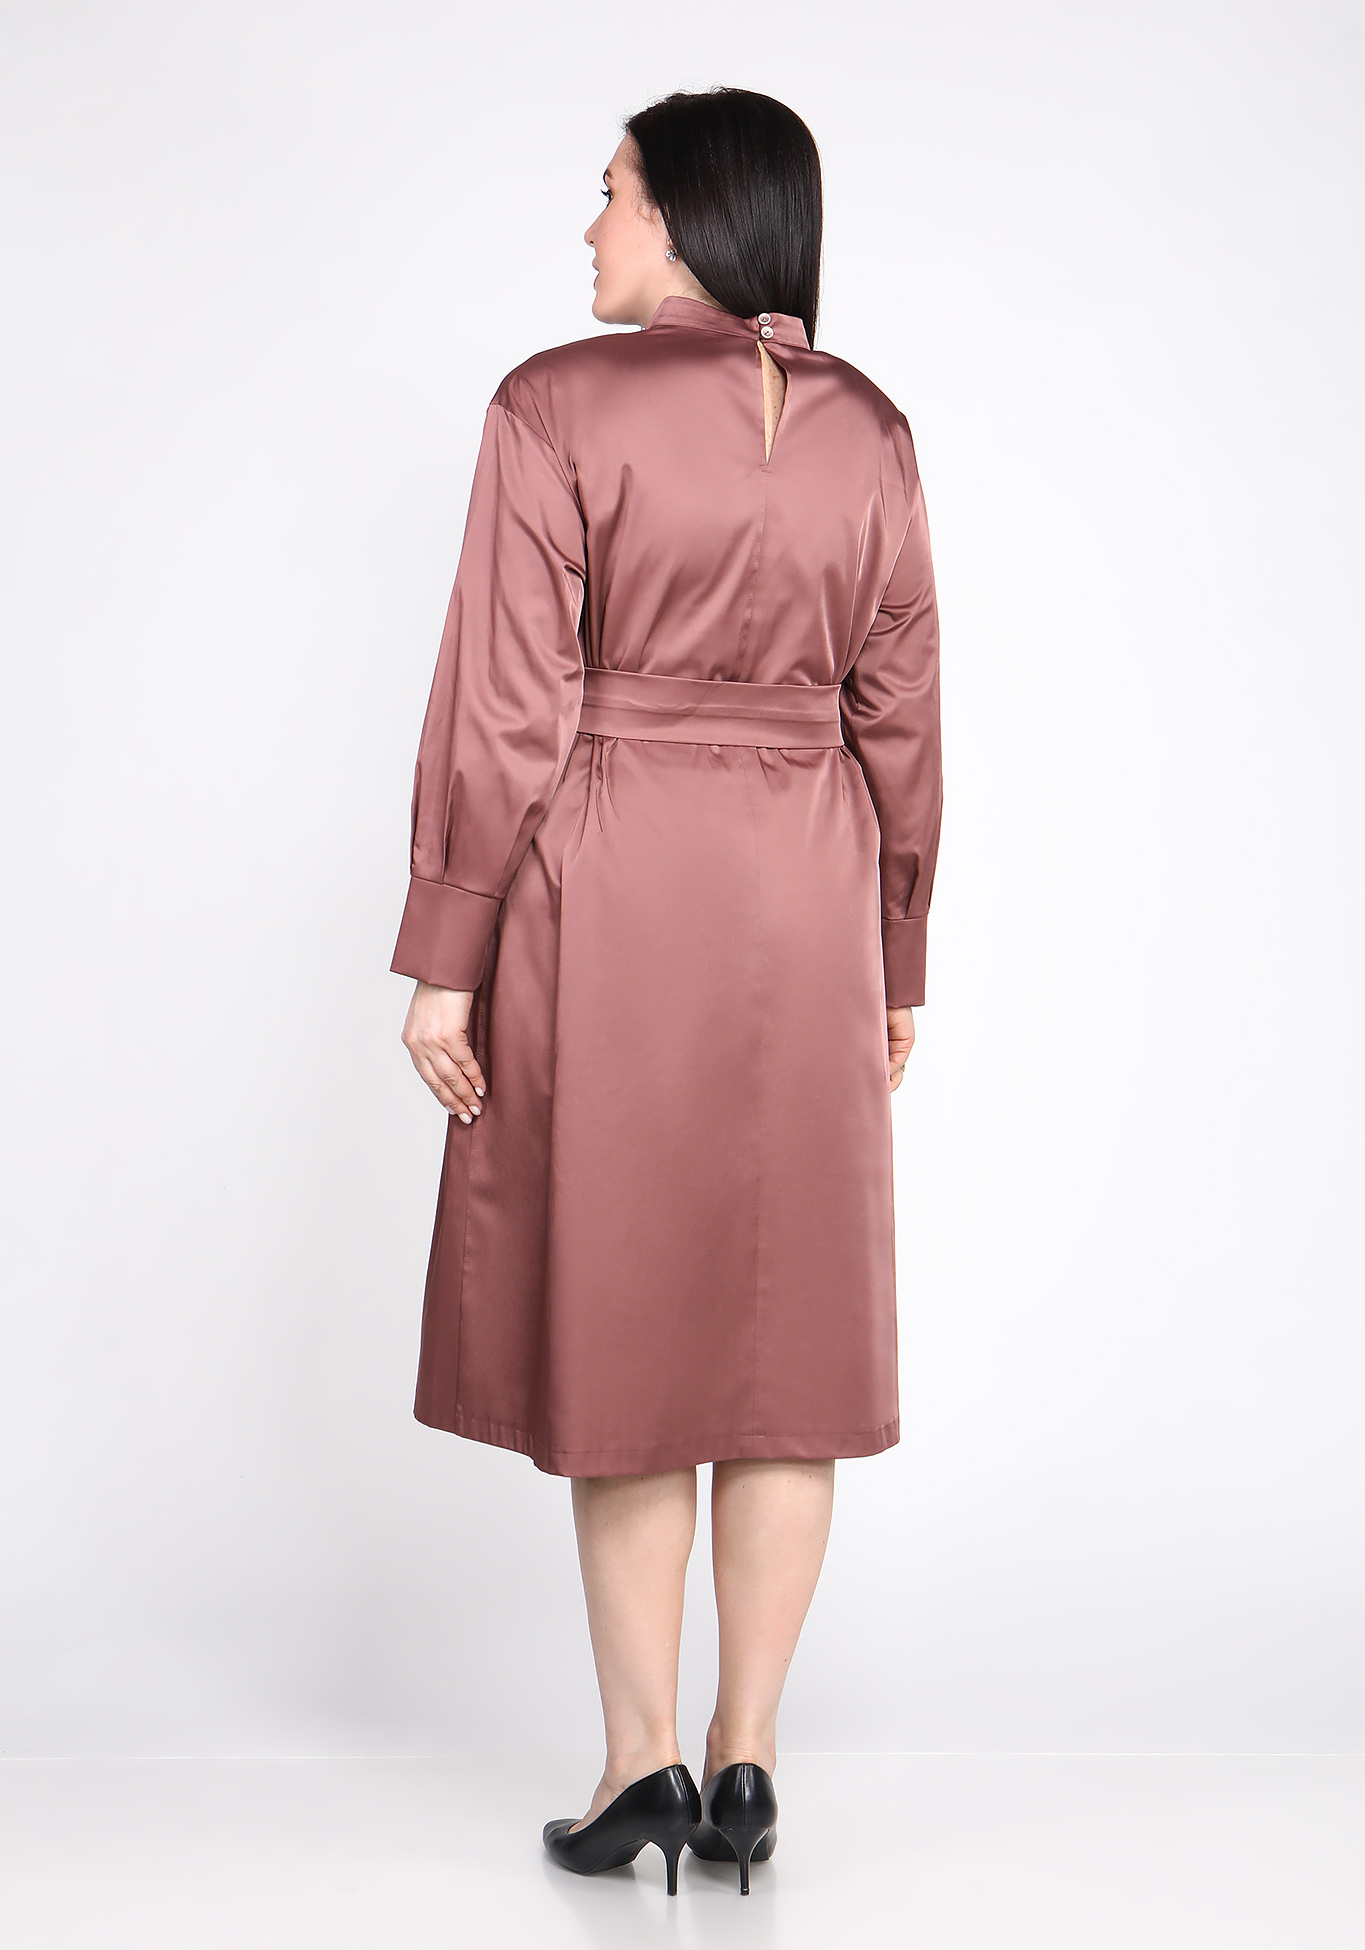 Платье с поясом на пуговицах Sarah Morenberg, размер 48, цвет тёмно-лиловый - фото 4